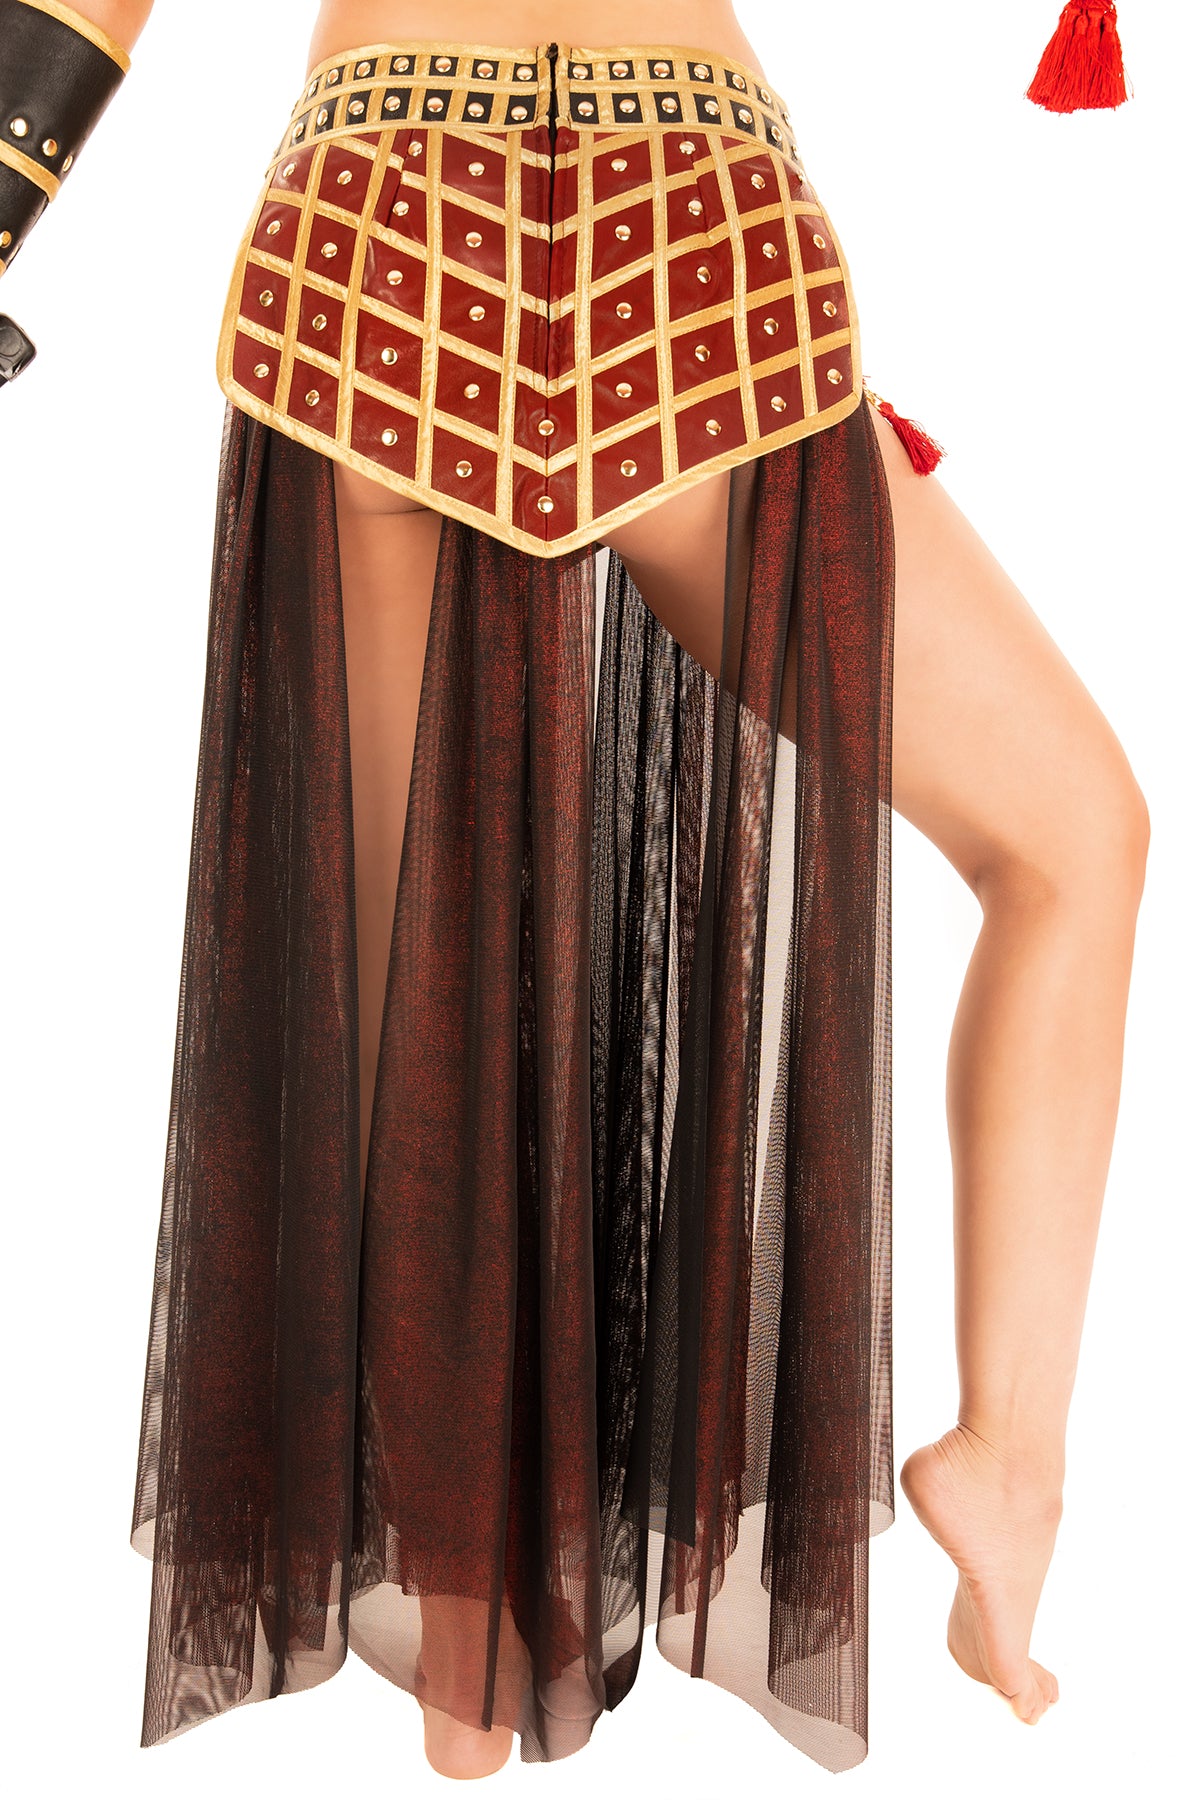 Imperial Warrior Skirt